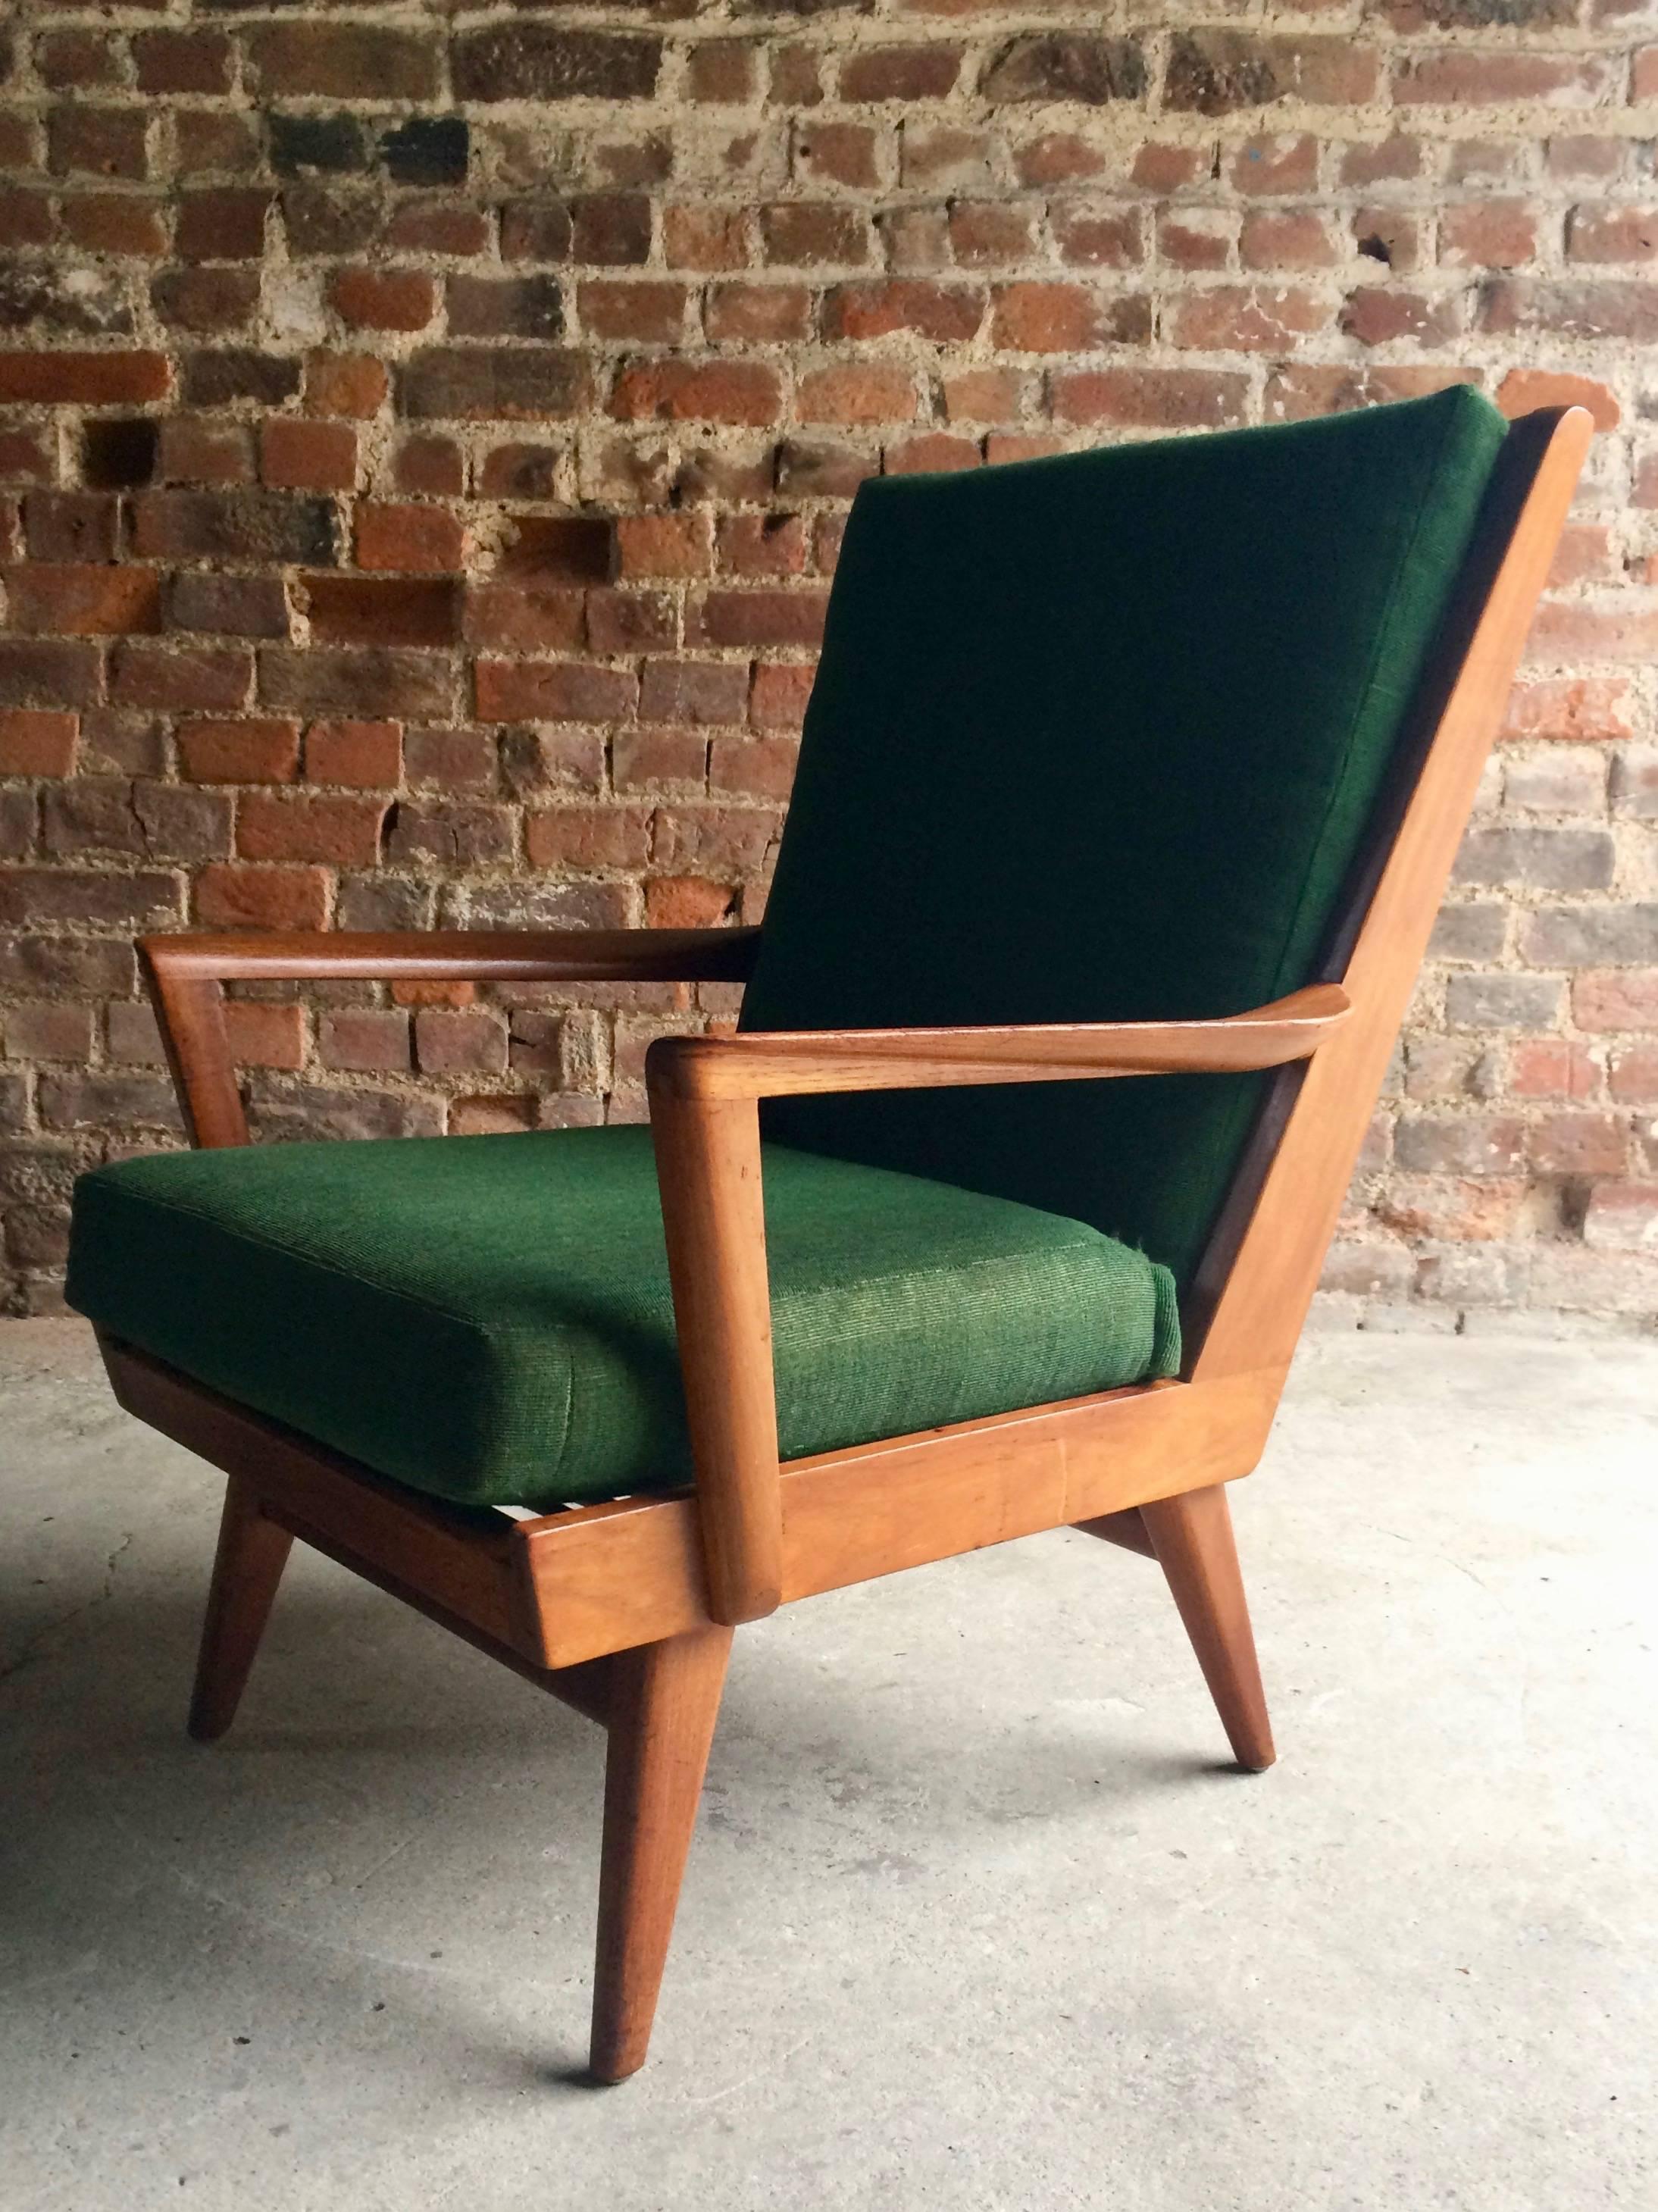 Mid-Century Modern Danish Teak Armchair Lounge Chair Midcentury 1950s Scandinavian Style